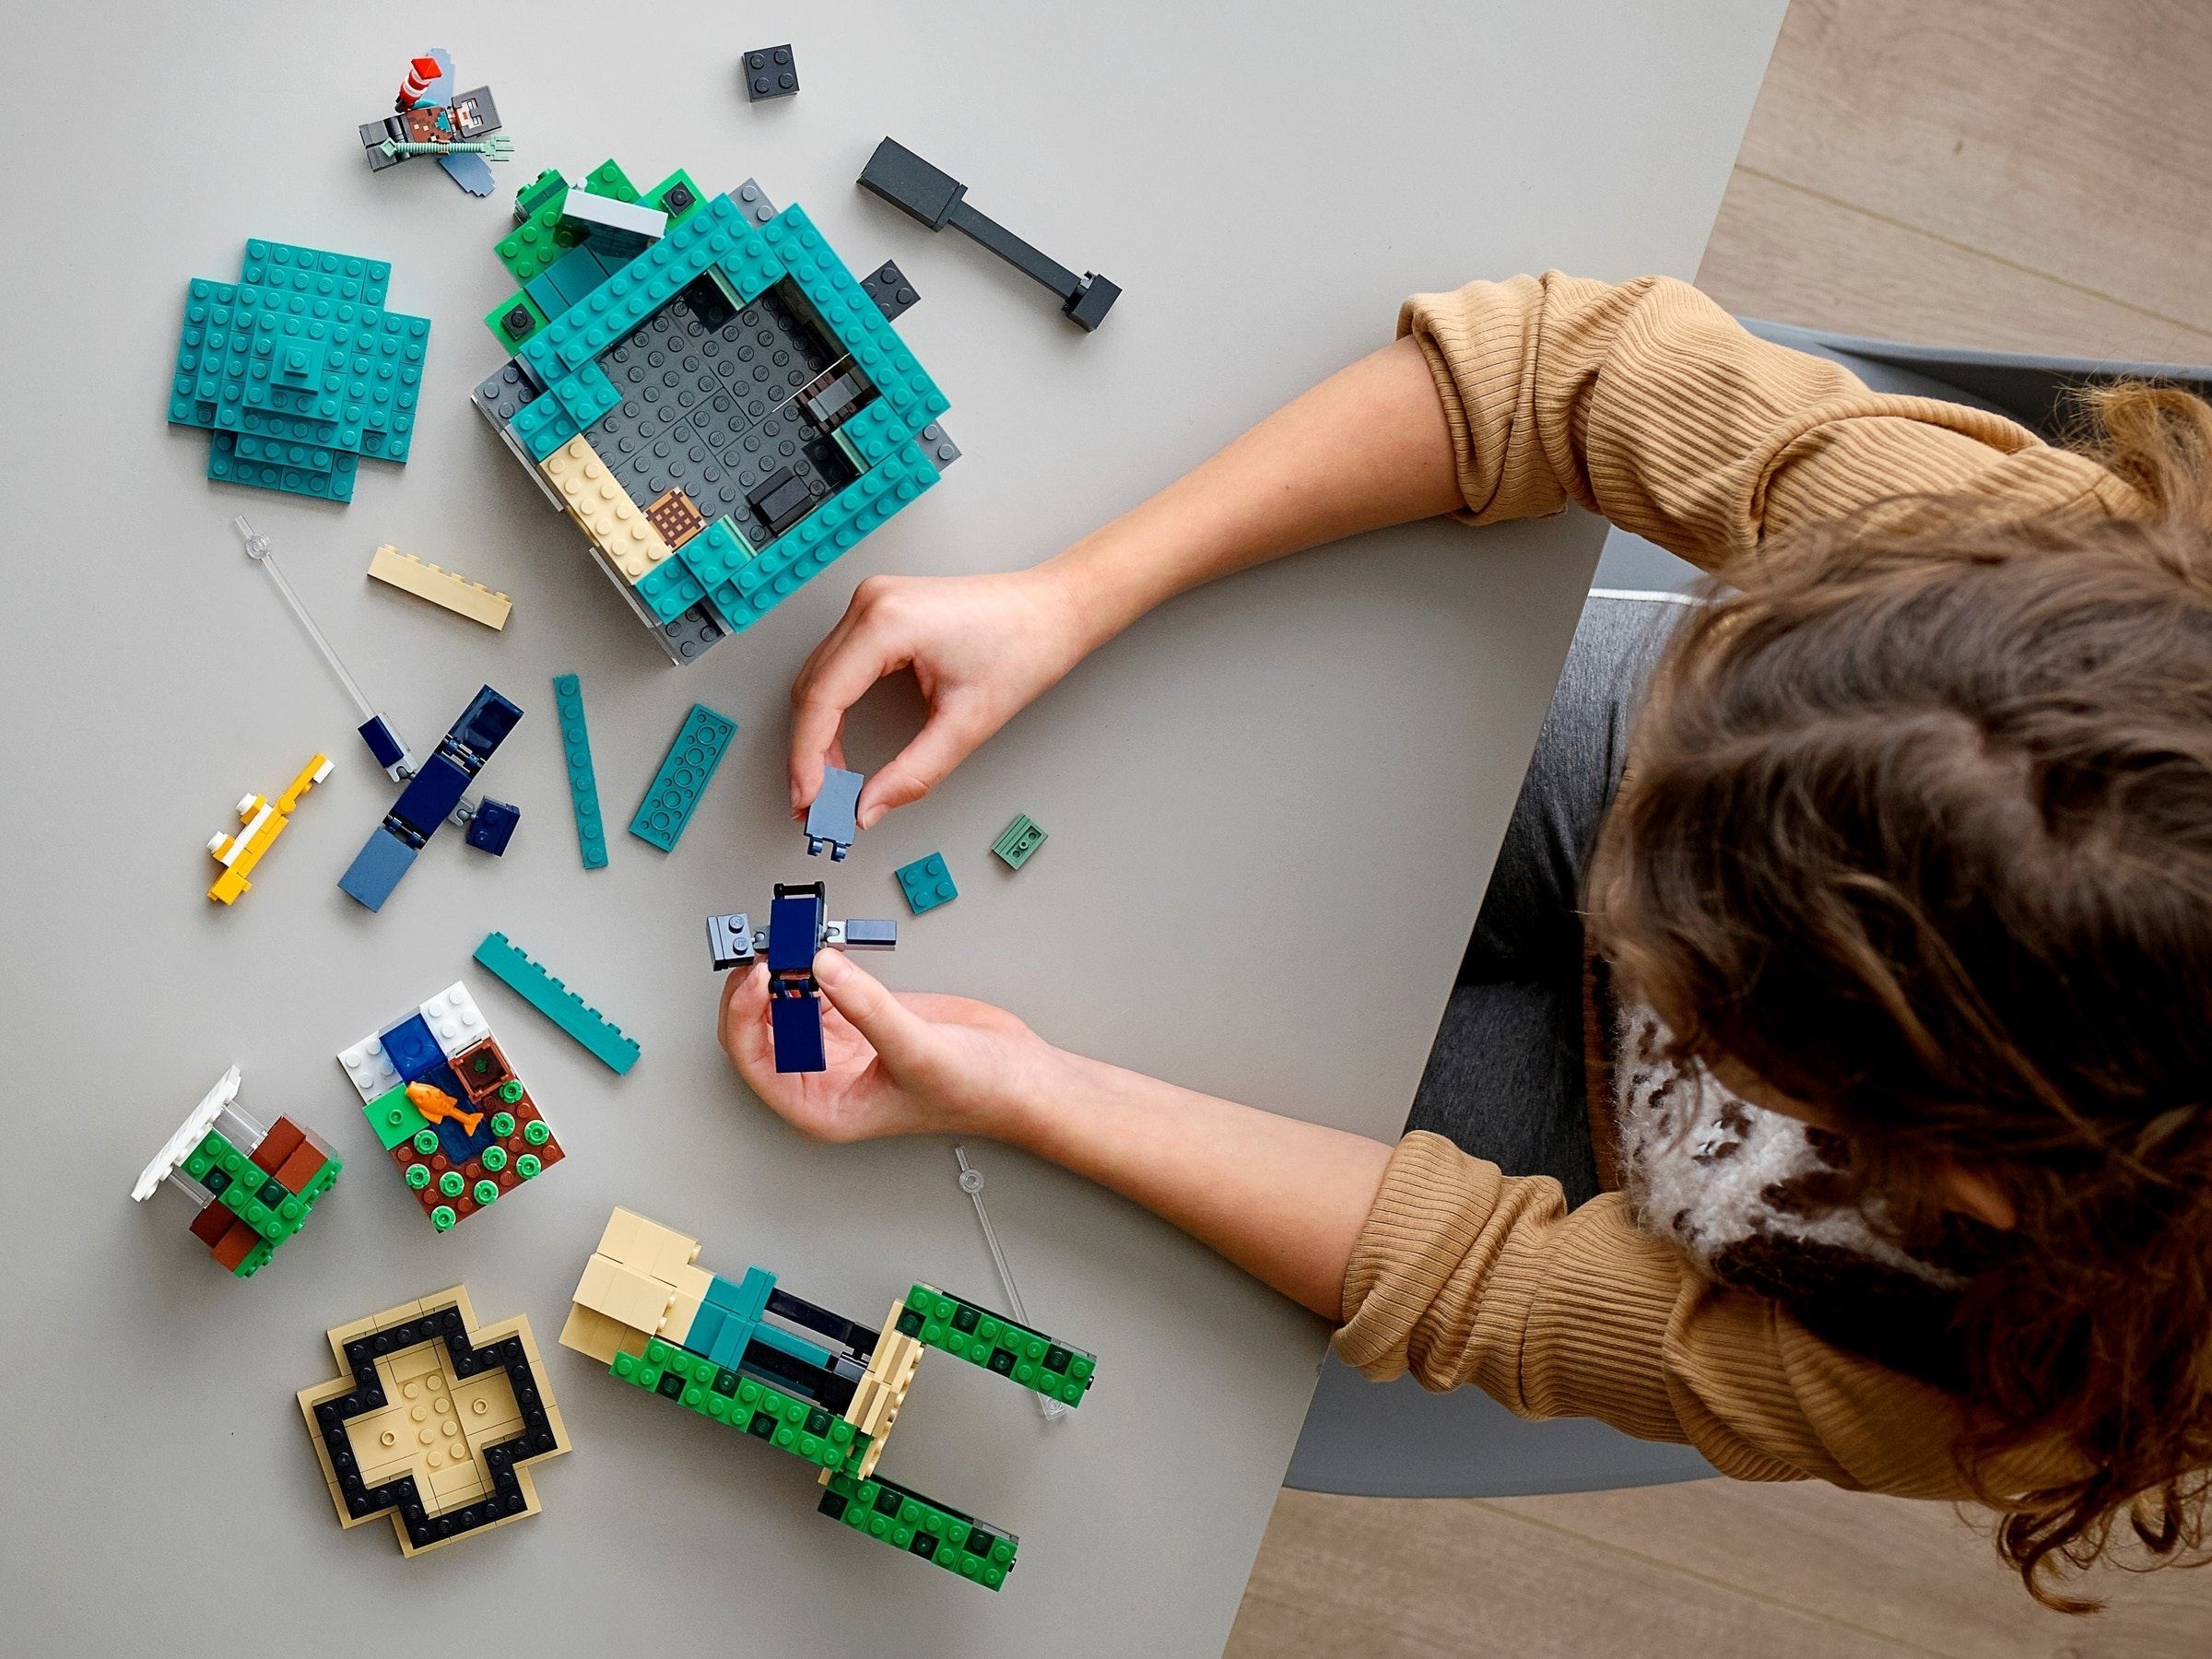 LEGO Minecraft™ 21173 Podniebna wieża